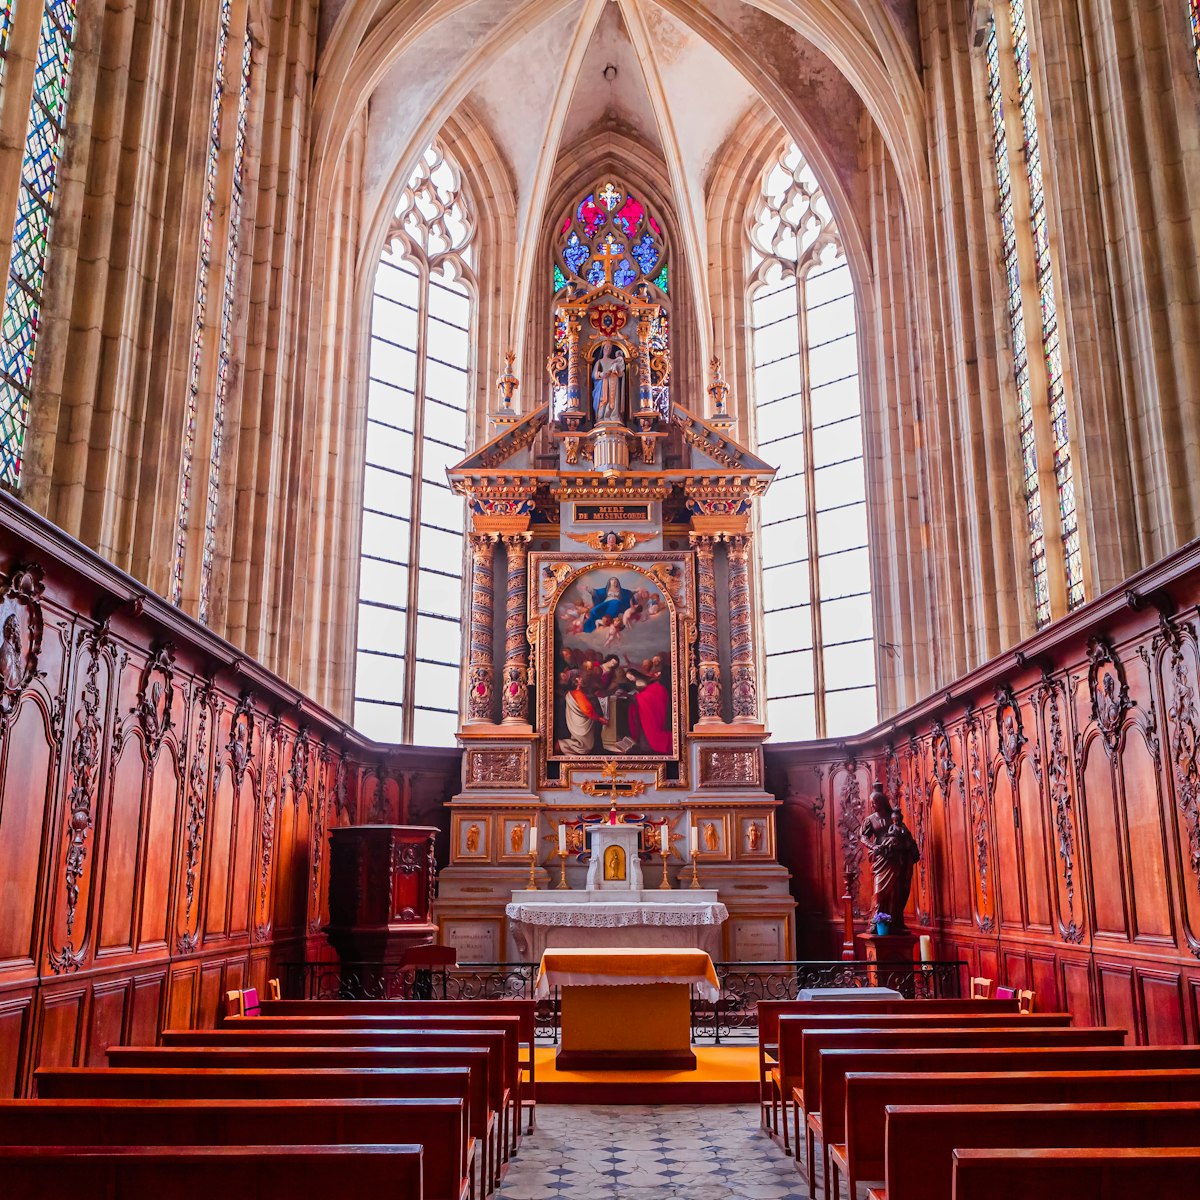 Central nave and altar of church Abbatiale de la Trinite in Fecamp, France.